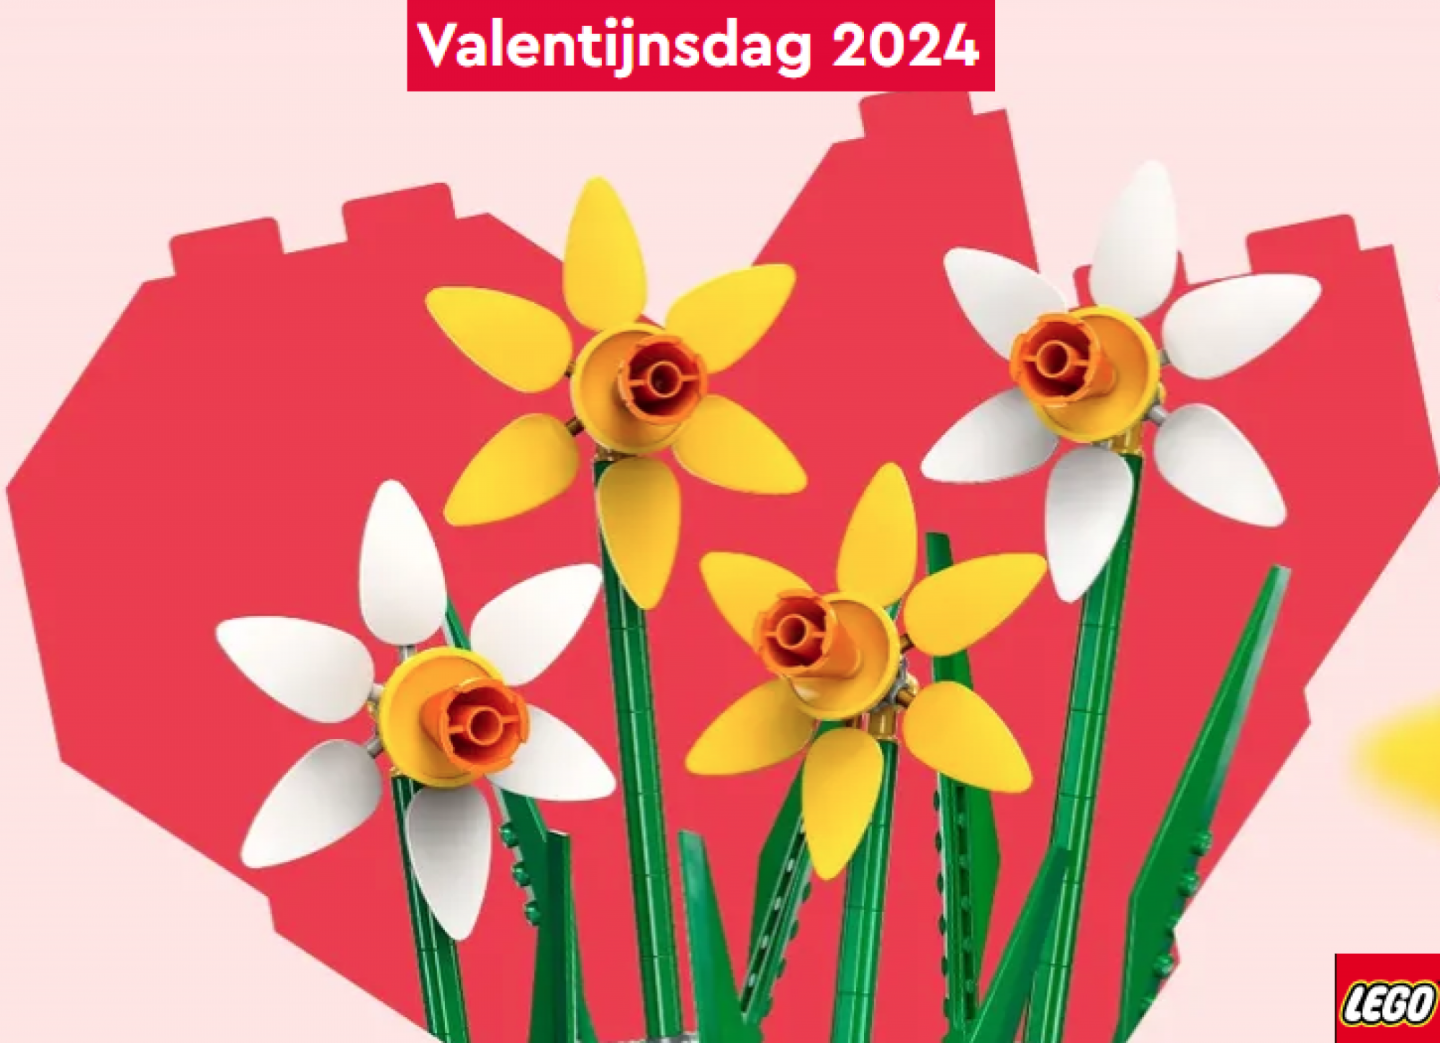 Bouw samen liefde: LEGO sets voor valentijnsdag 2024